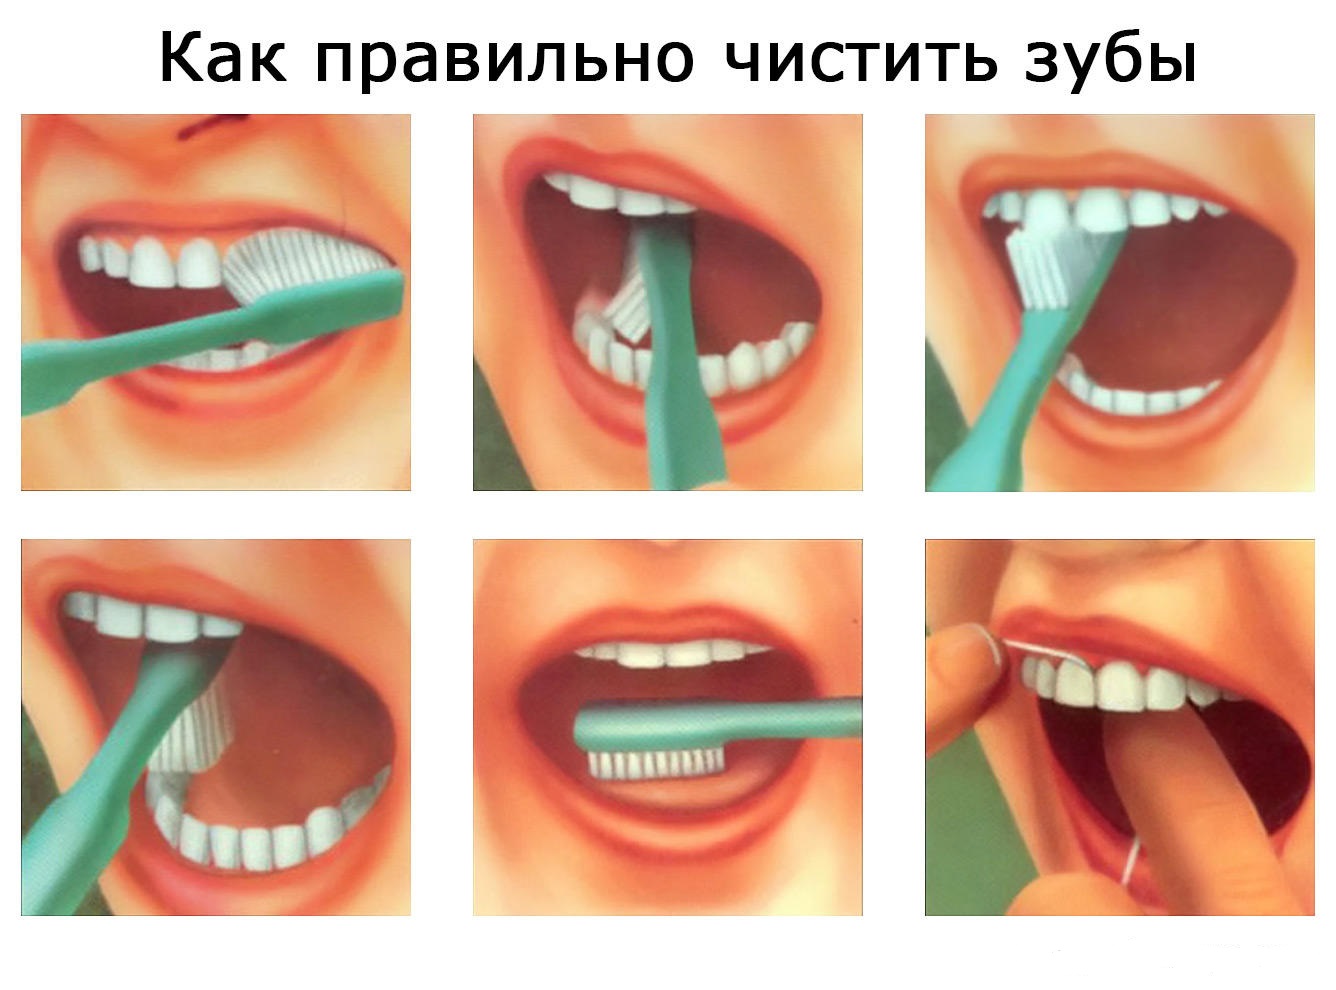 Чистка зубов какая. Как правильно чистить зубы. КСК праивльно чистить щубы. Как правильно Чисть зубы. Правильная чистка зубов.